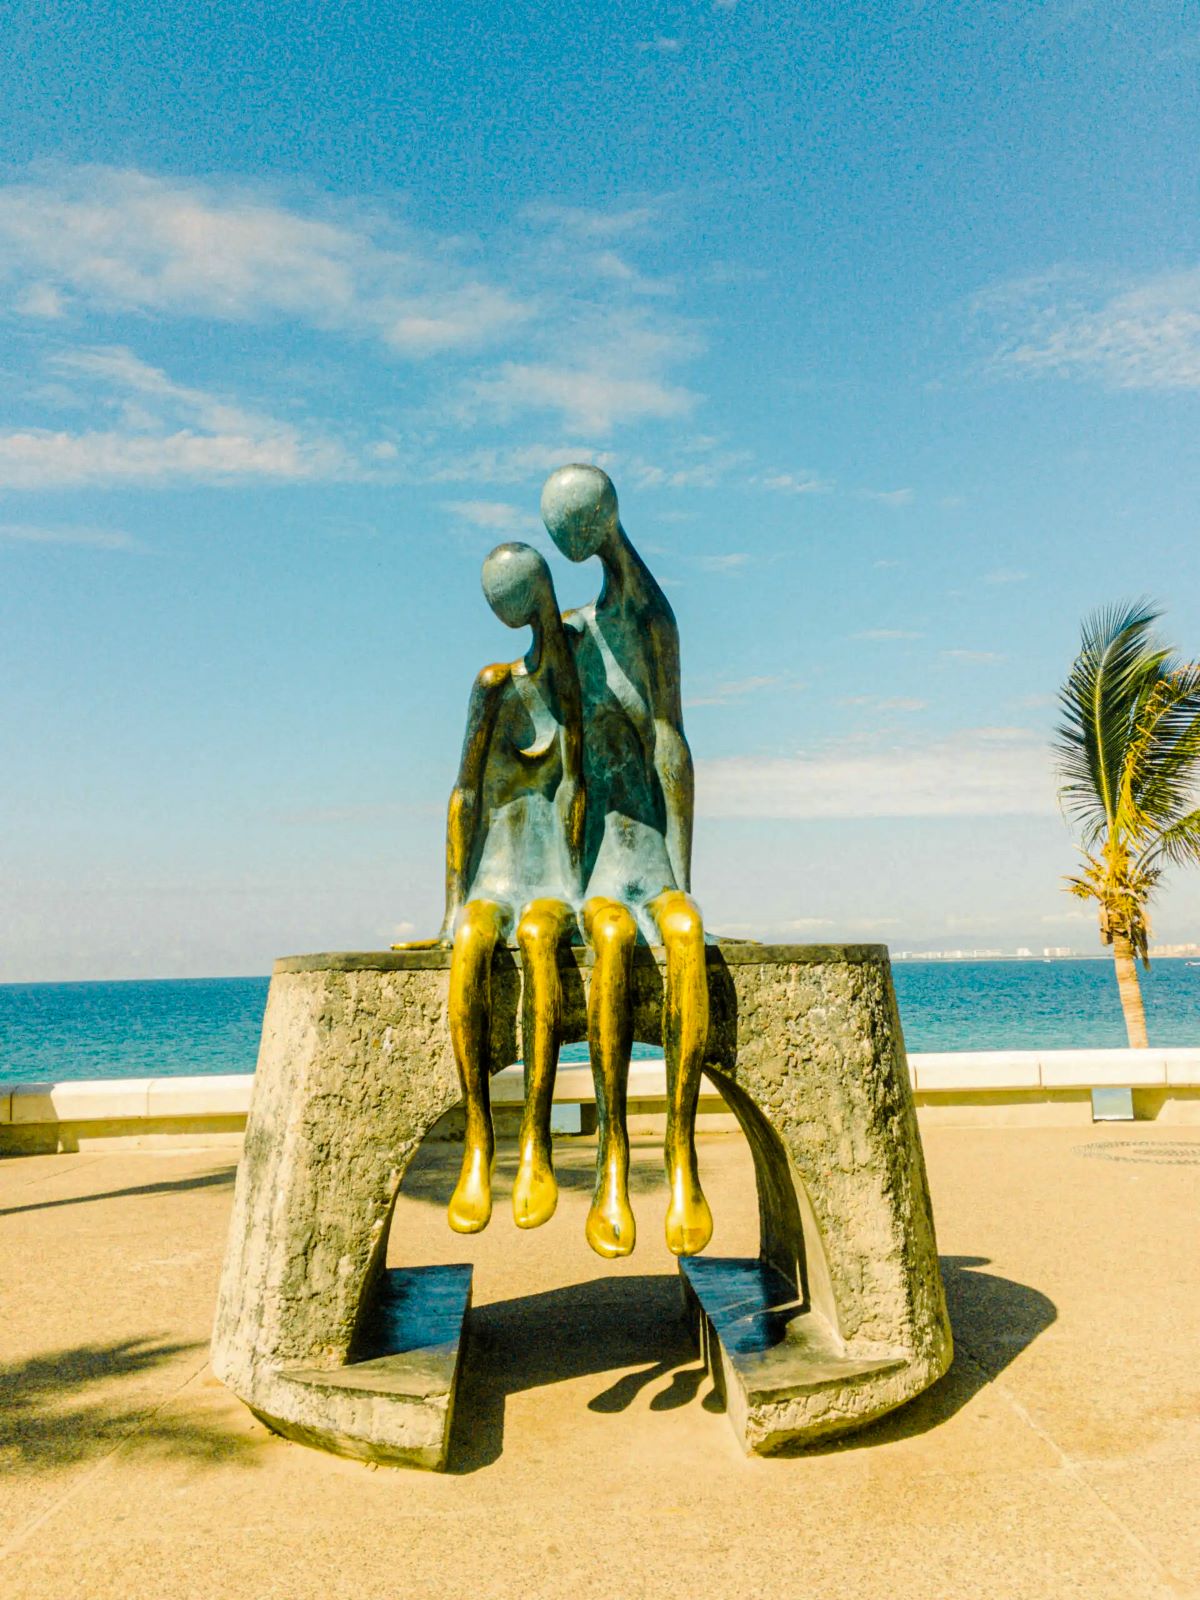 A Statue at the Malecon Puerto Vallarta.